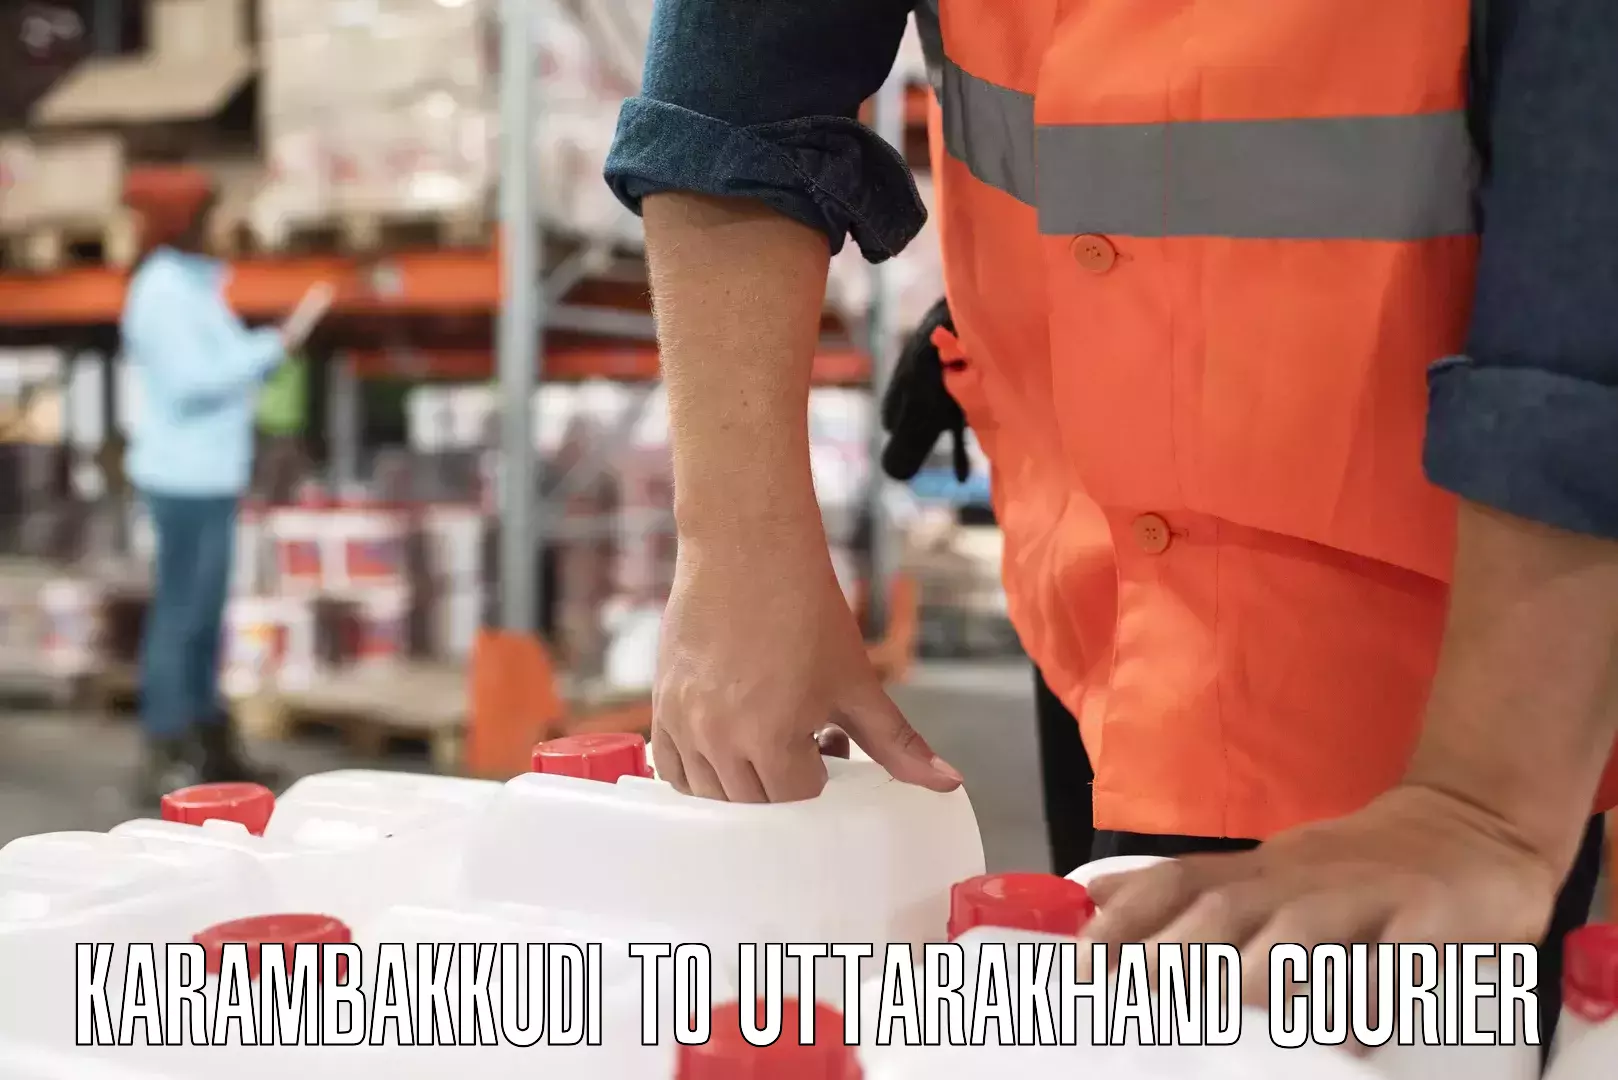 E-commerce logistics support Karambakkudi to Nainital